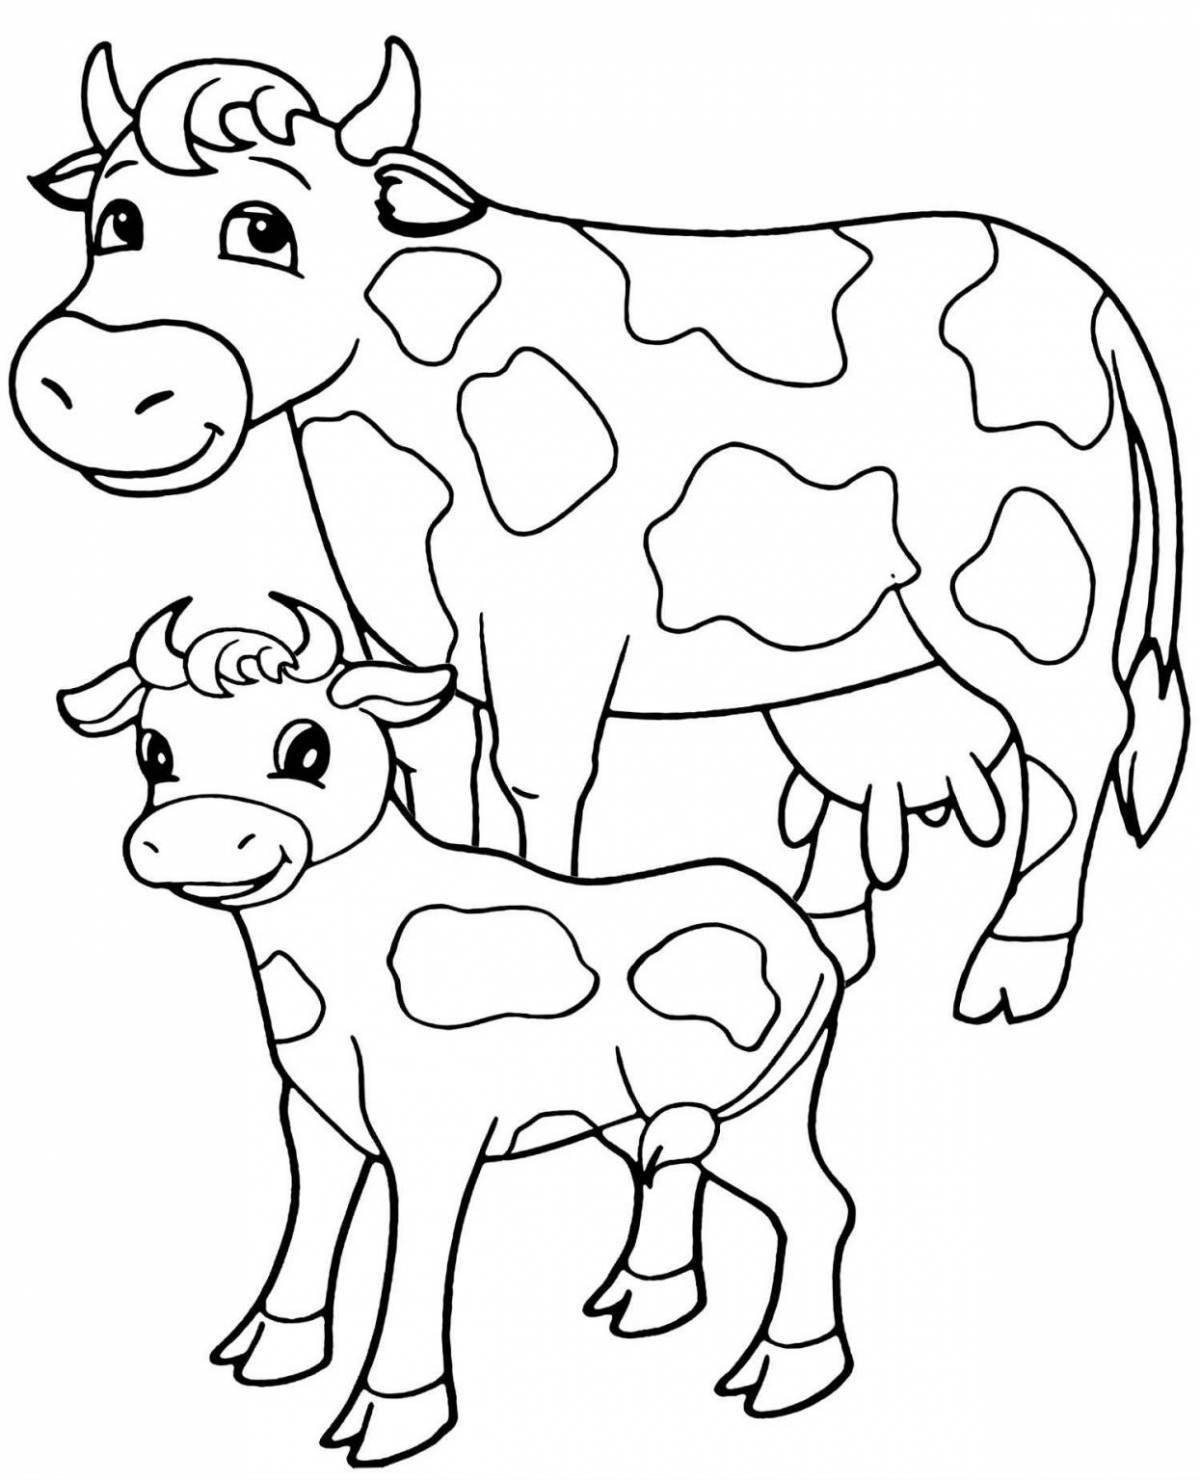 Развлекательная раскраска теленка для детей